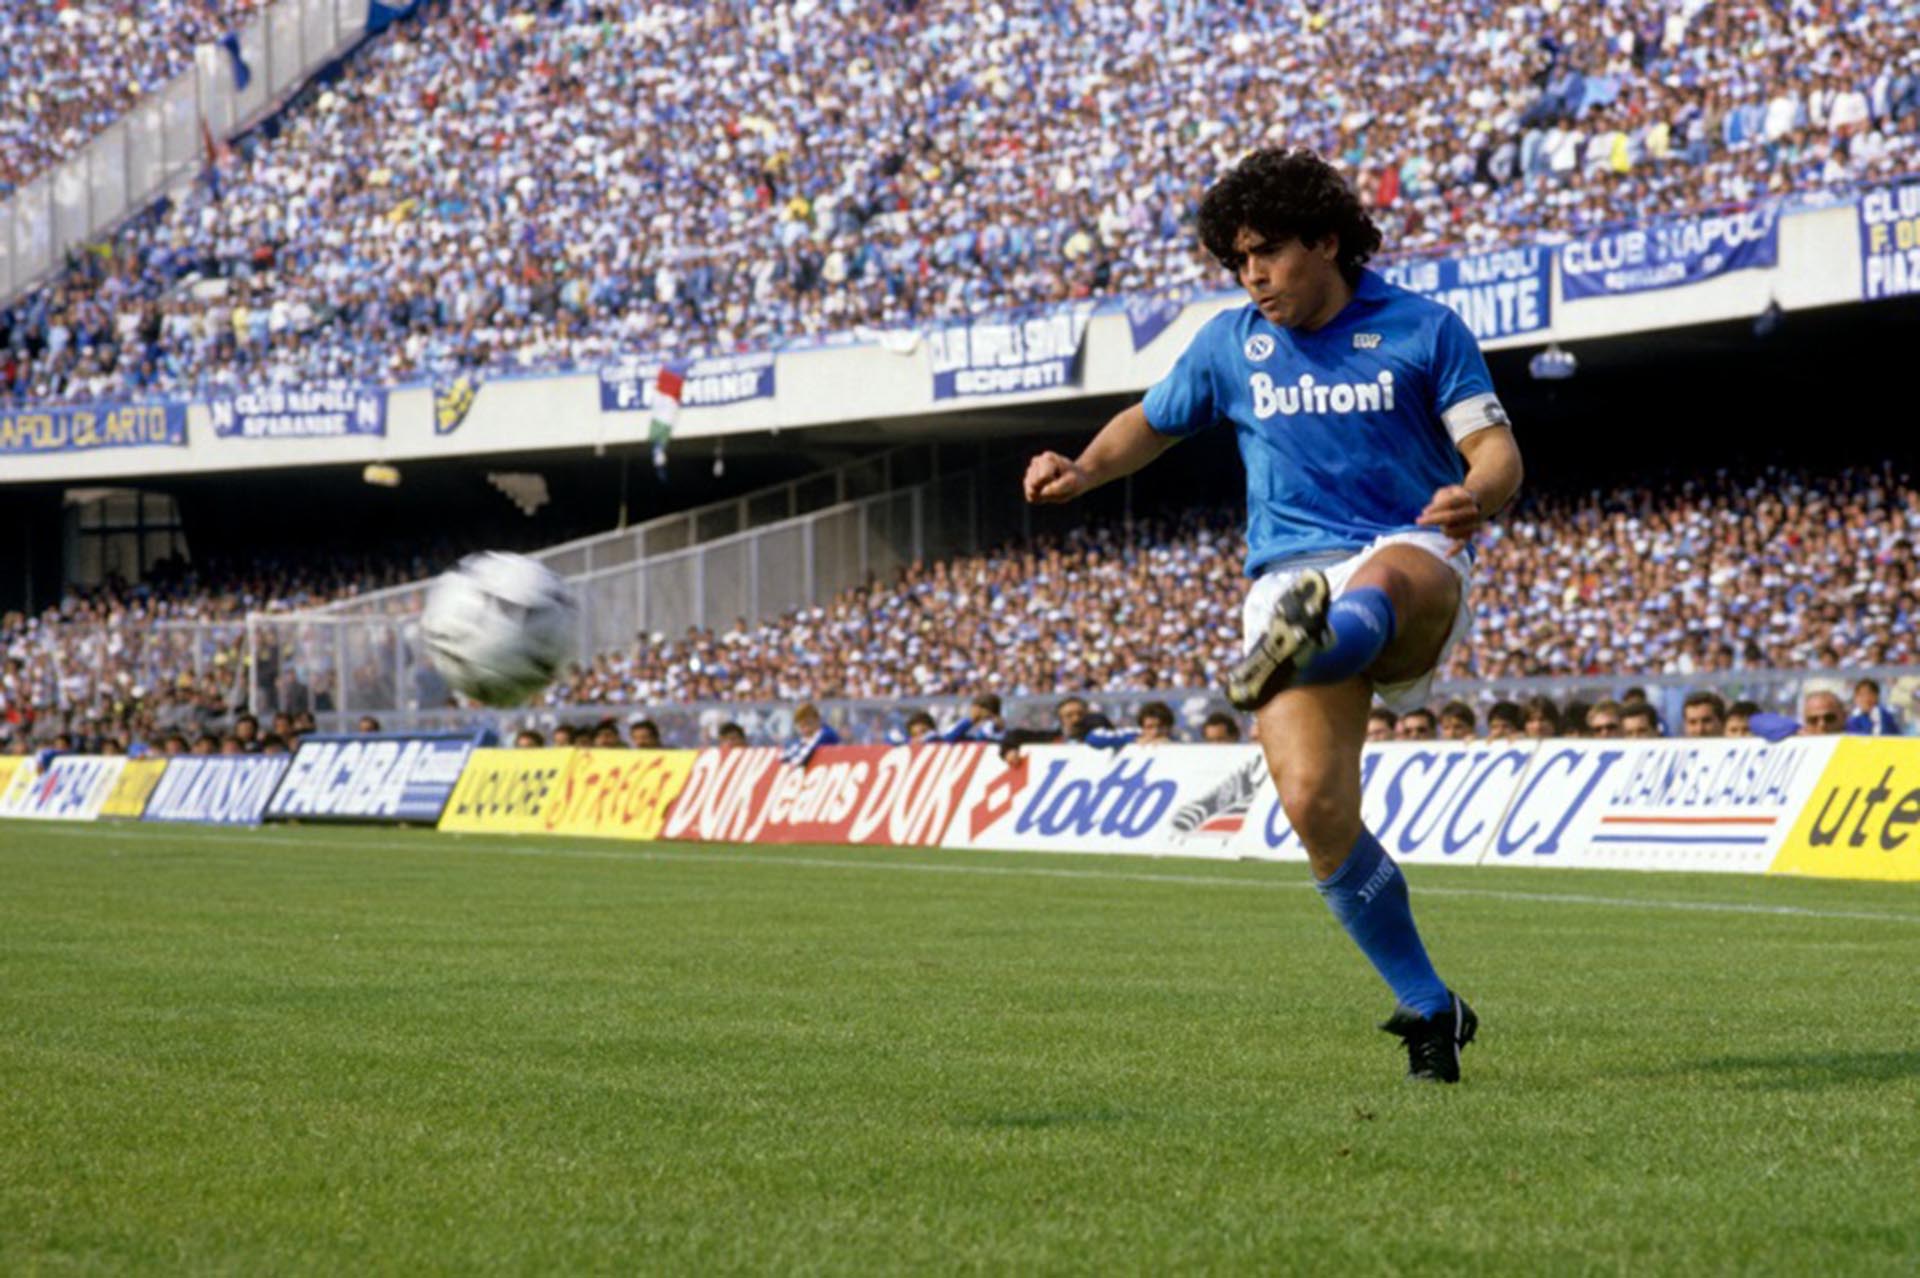 No habrá ninguno igual: Diego Maradona desplegando su magia en el estadio San Paolo, con el Napoli